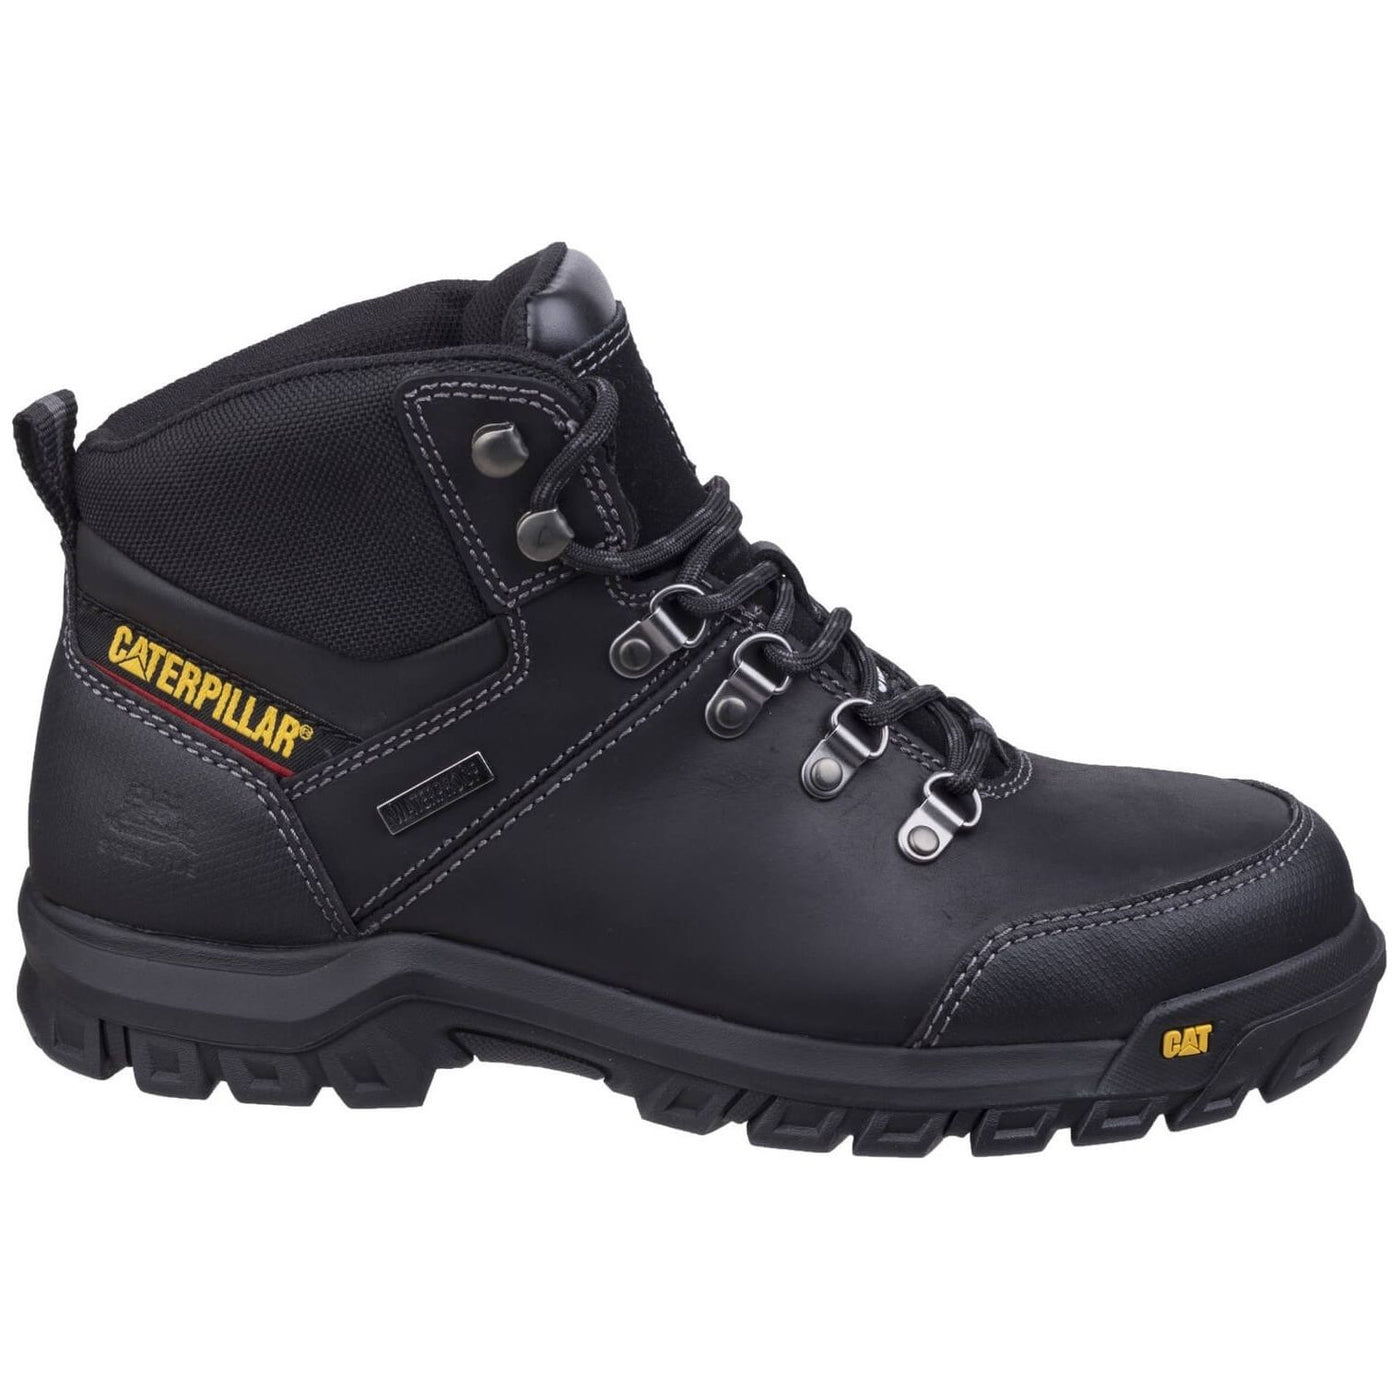 Caterpillar Framework S3 Safety Boots-Black-4